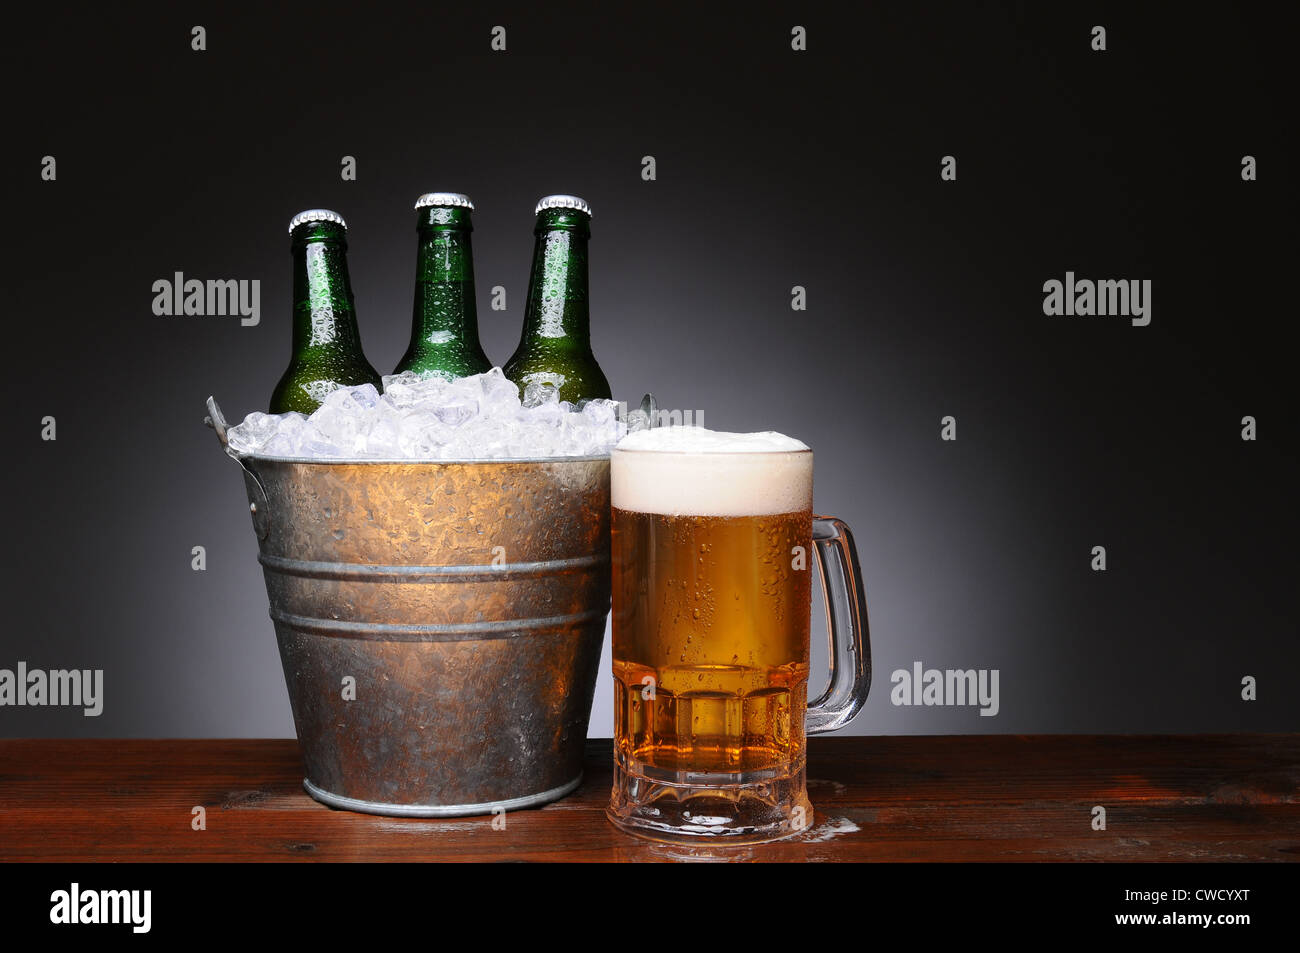 Un secchiello per il ghiaccio con verde tre bottiglie di birra accanto a una tazza piena di ale sul bagnato la superficie di legno. Foto Stock